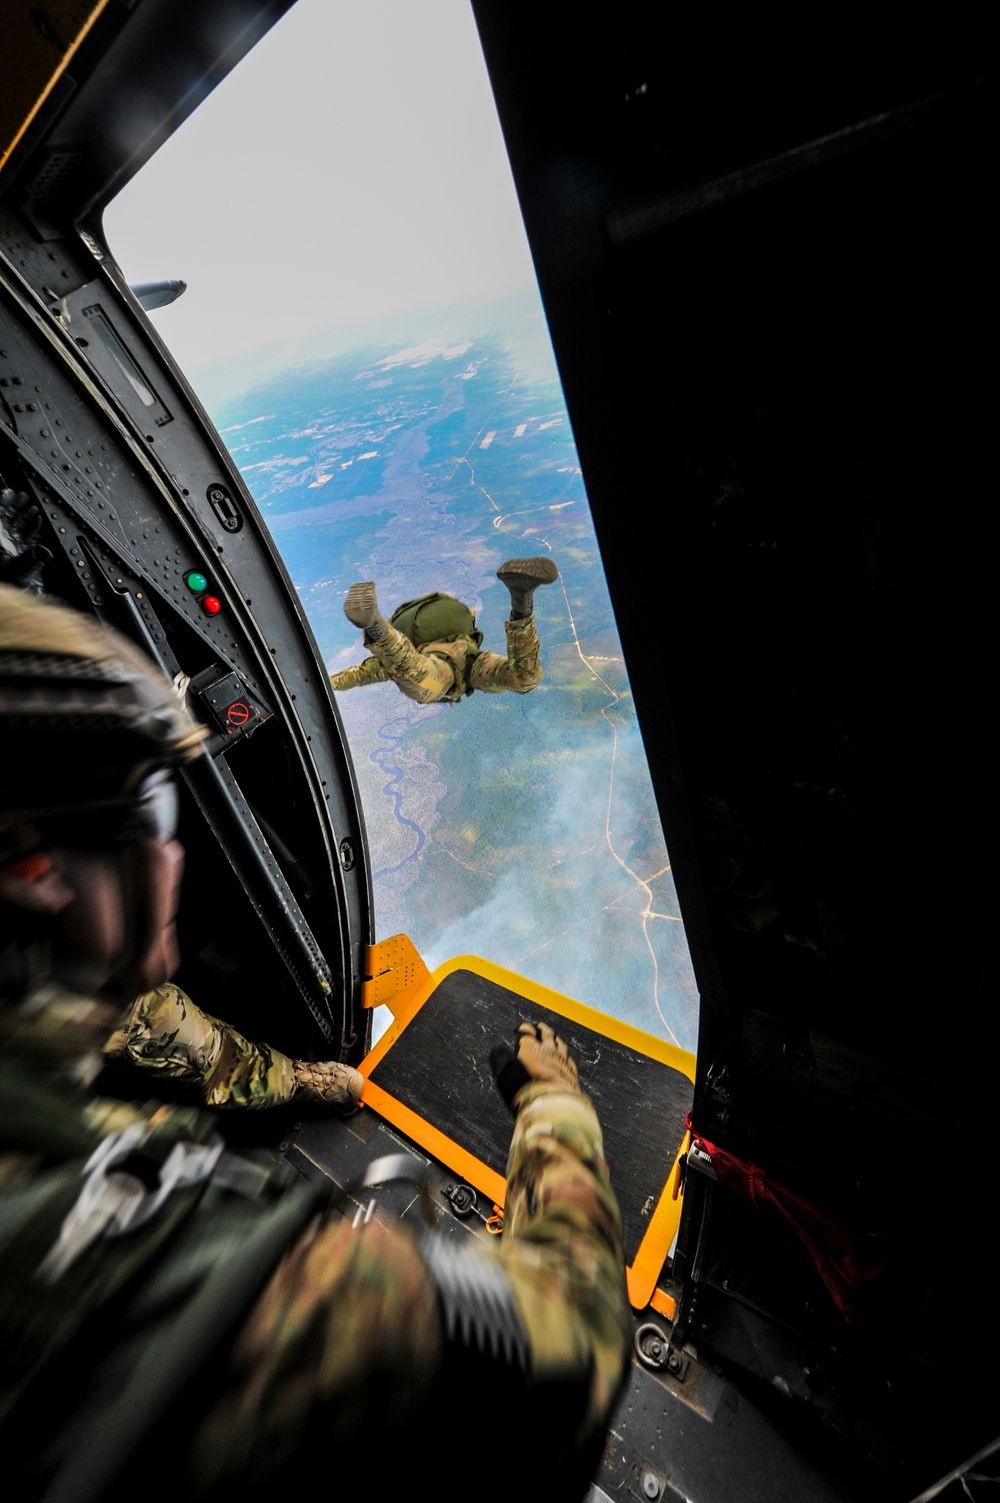 Go, go, go: Air commandos jump at 10,000